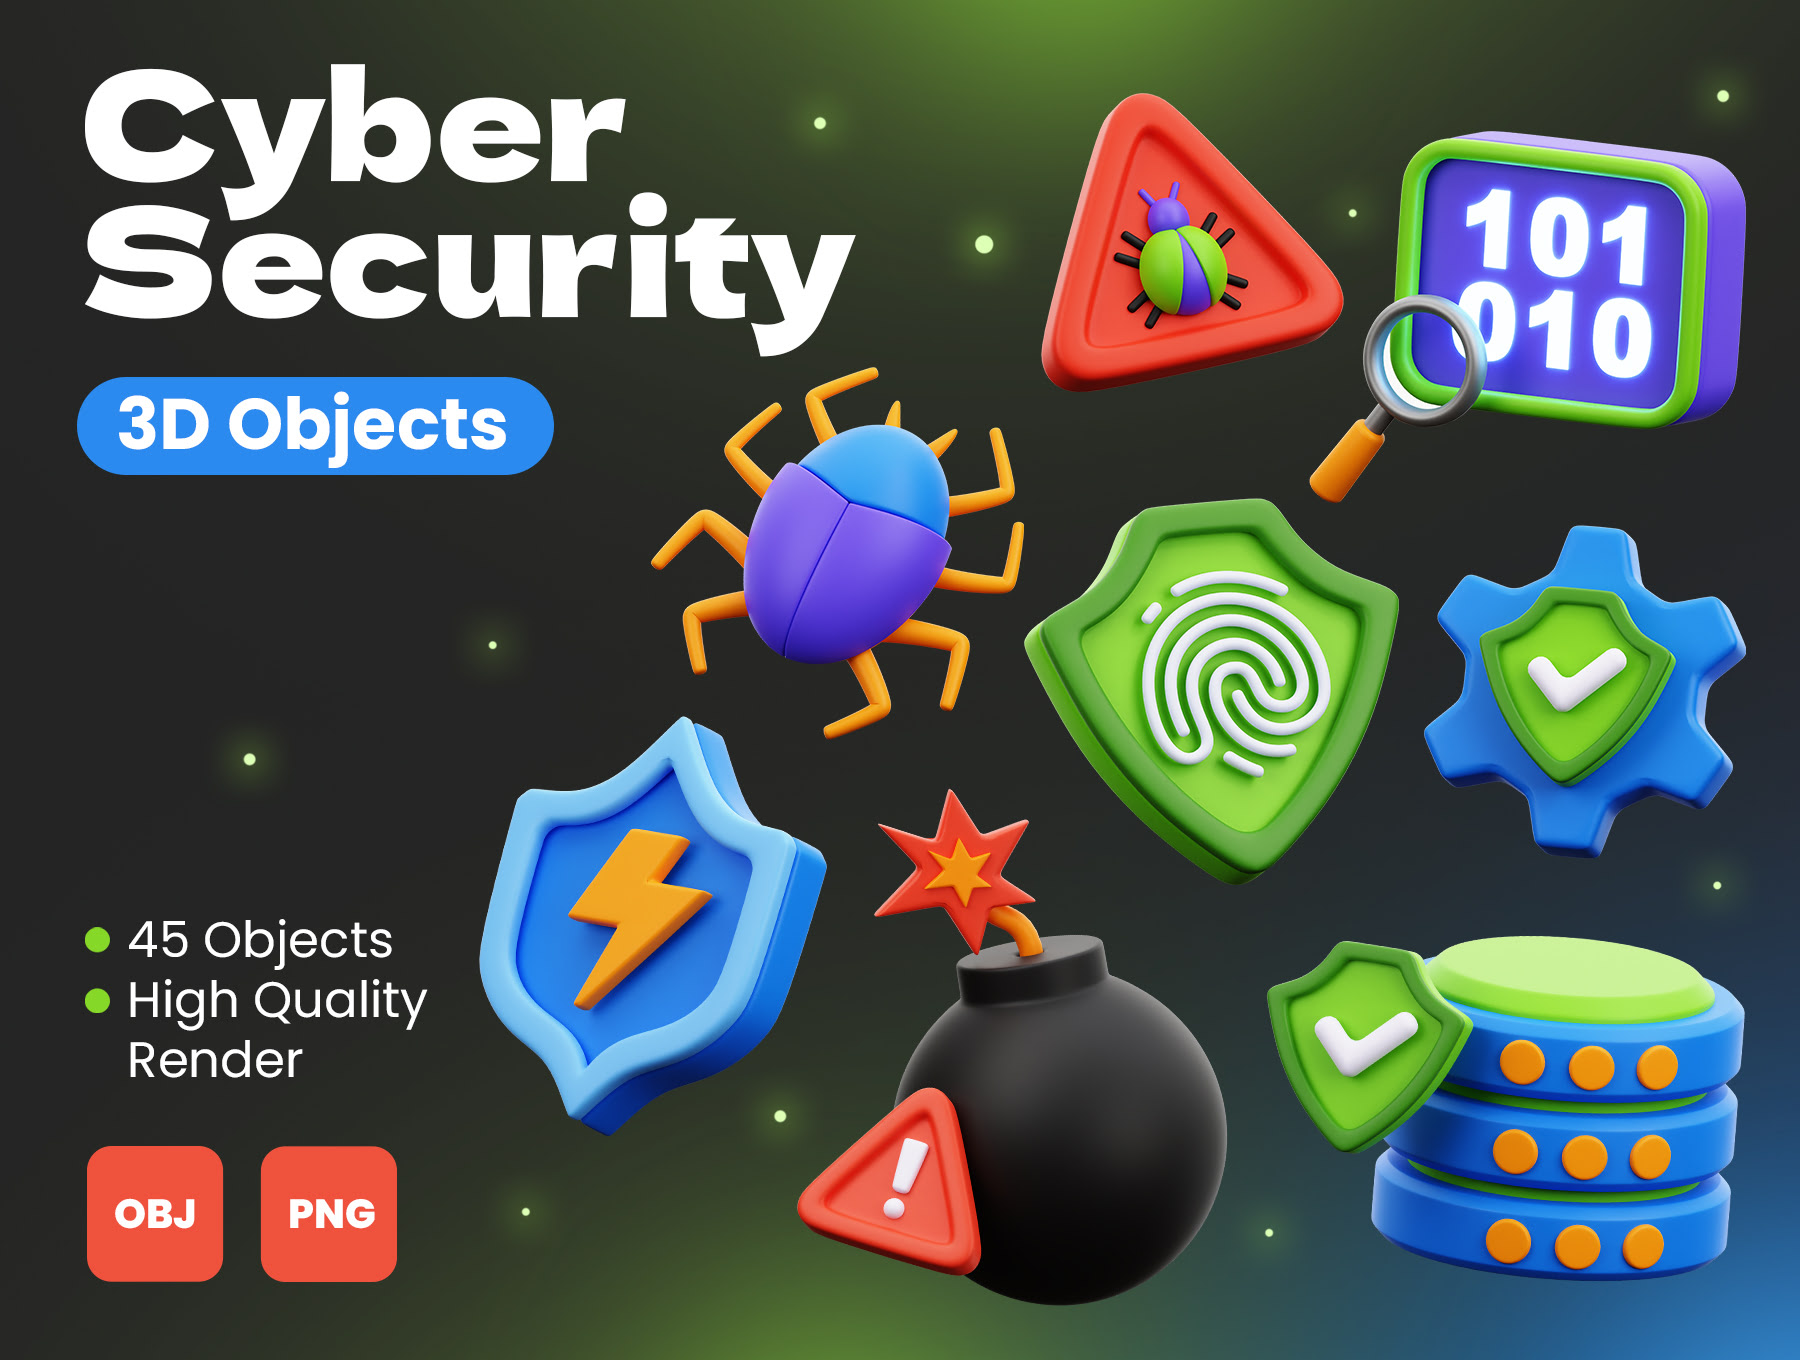 网络安全3D对象 Cyber Security 3D Objects png, obj, glb格式-3D/图标-到位啦UI